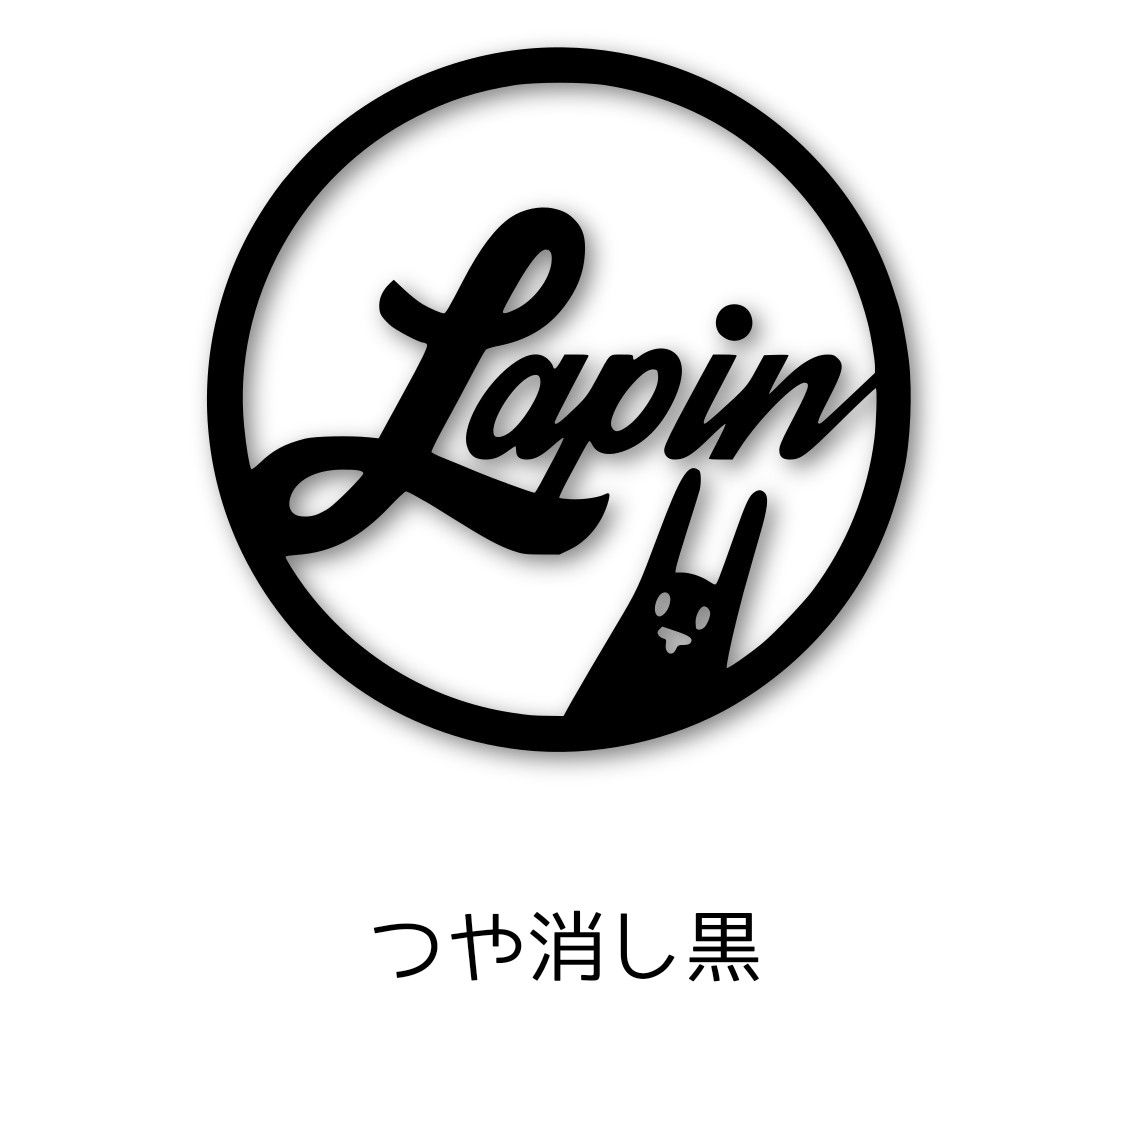 Lapin ラパン サークルデザイン うさぎ カッティングステッカー白